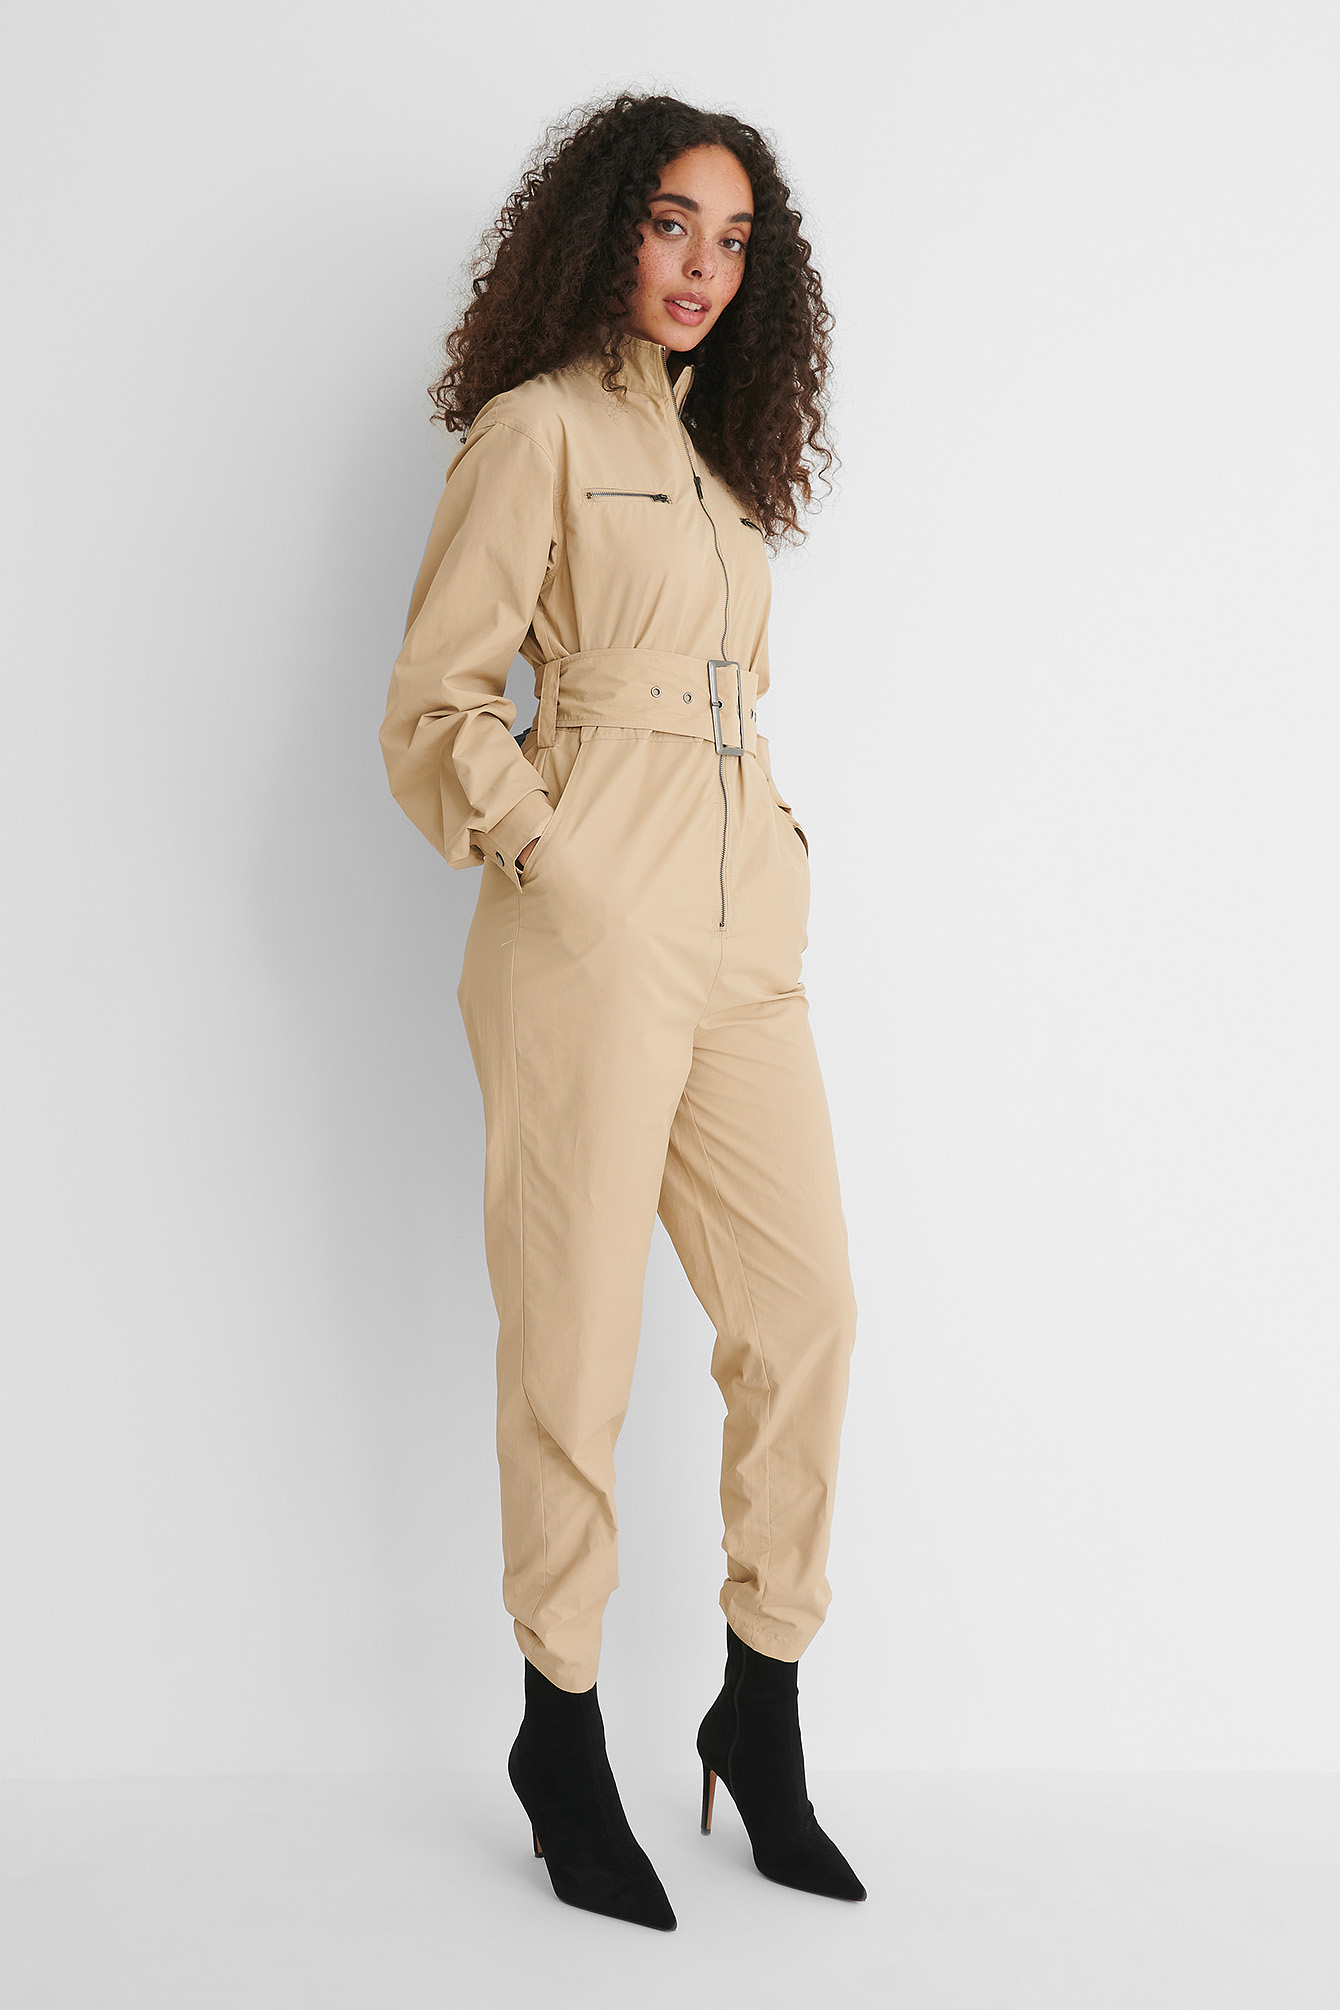 Femme Vêtements Combinaisons Combinaisons longues Josefine HJ x Combinaison pantalon Coton NA-KD en coloris Neutre 